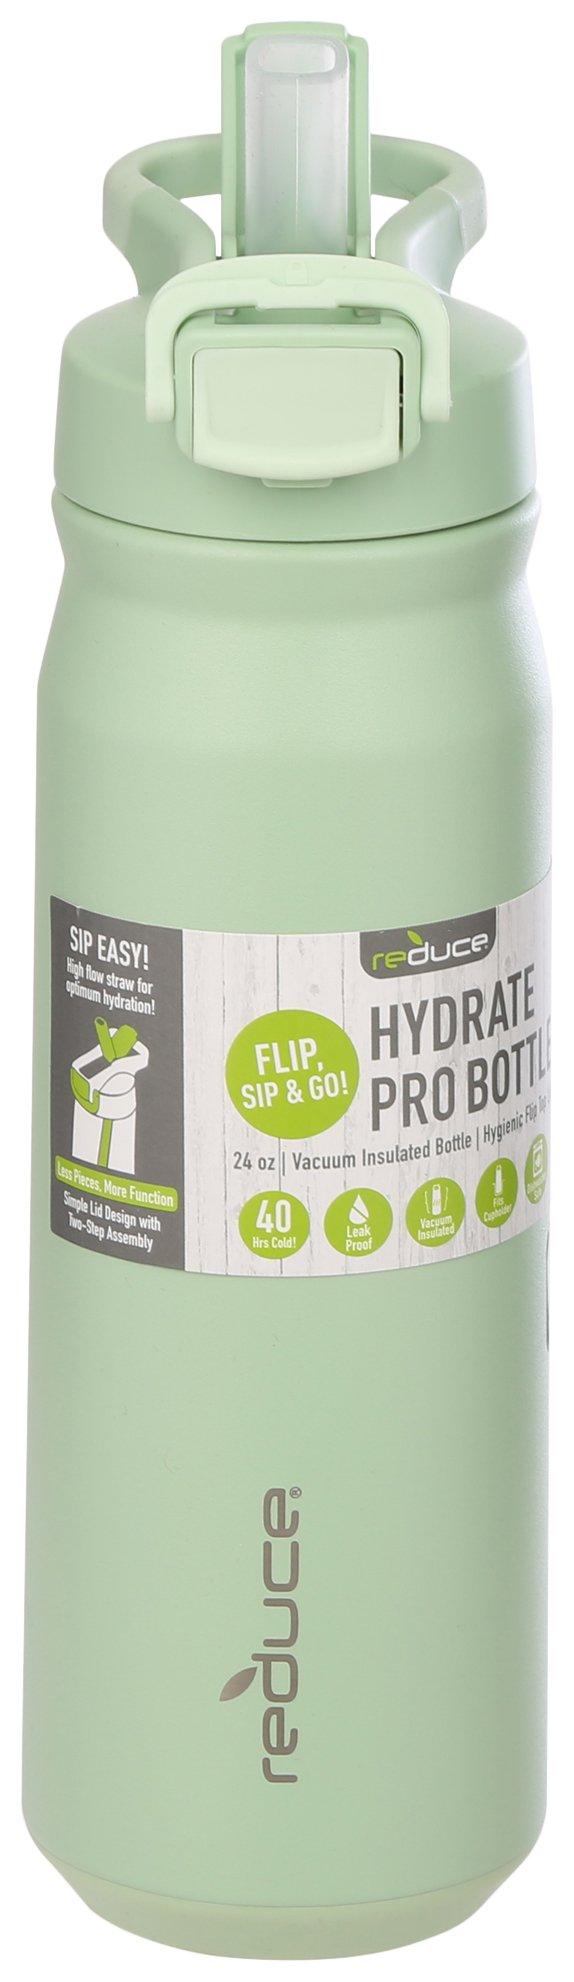 24oz Hydrate Pro Bottle